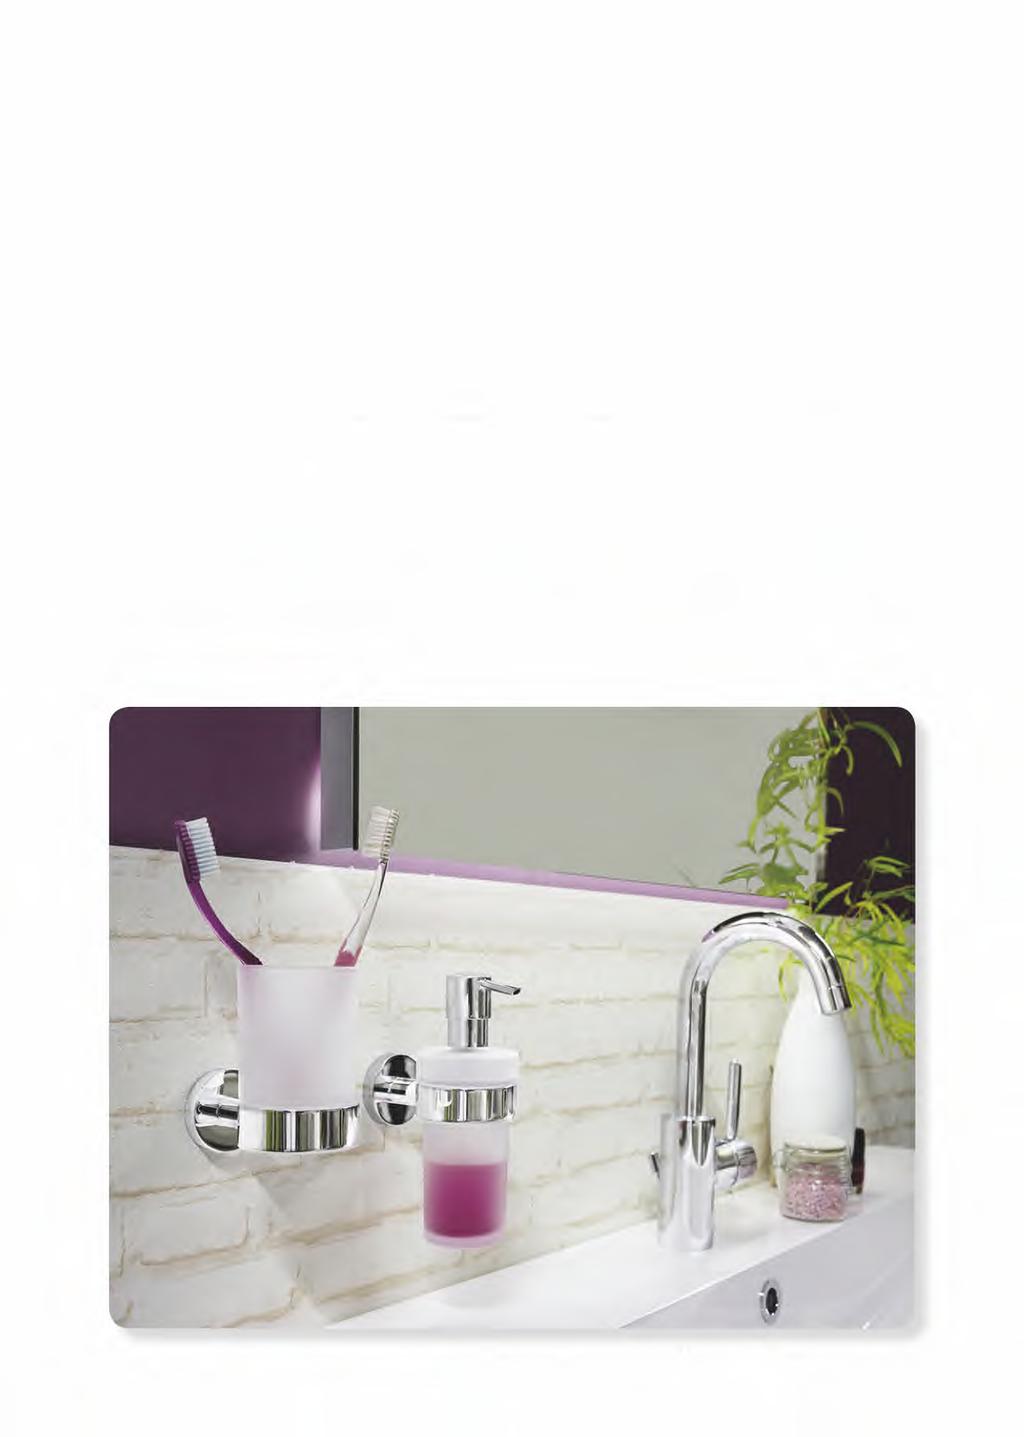 Gebruikershandleiding + Gelieve regelmatig te reinigen om te voorkomen dat resten van zeep, shampoo en douchegels zich kunnen